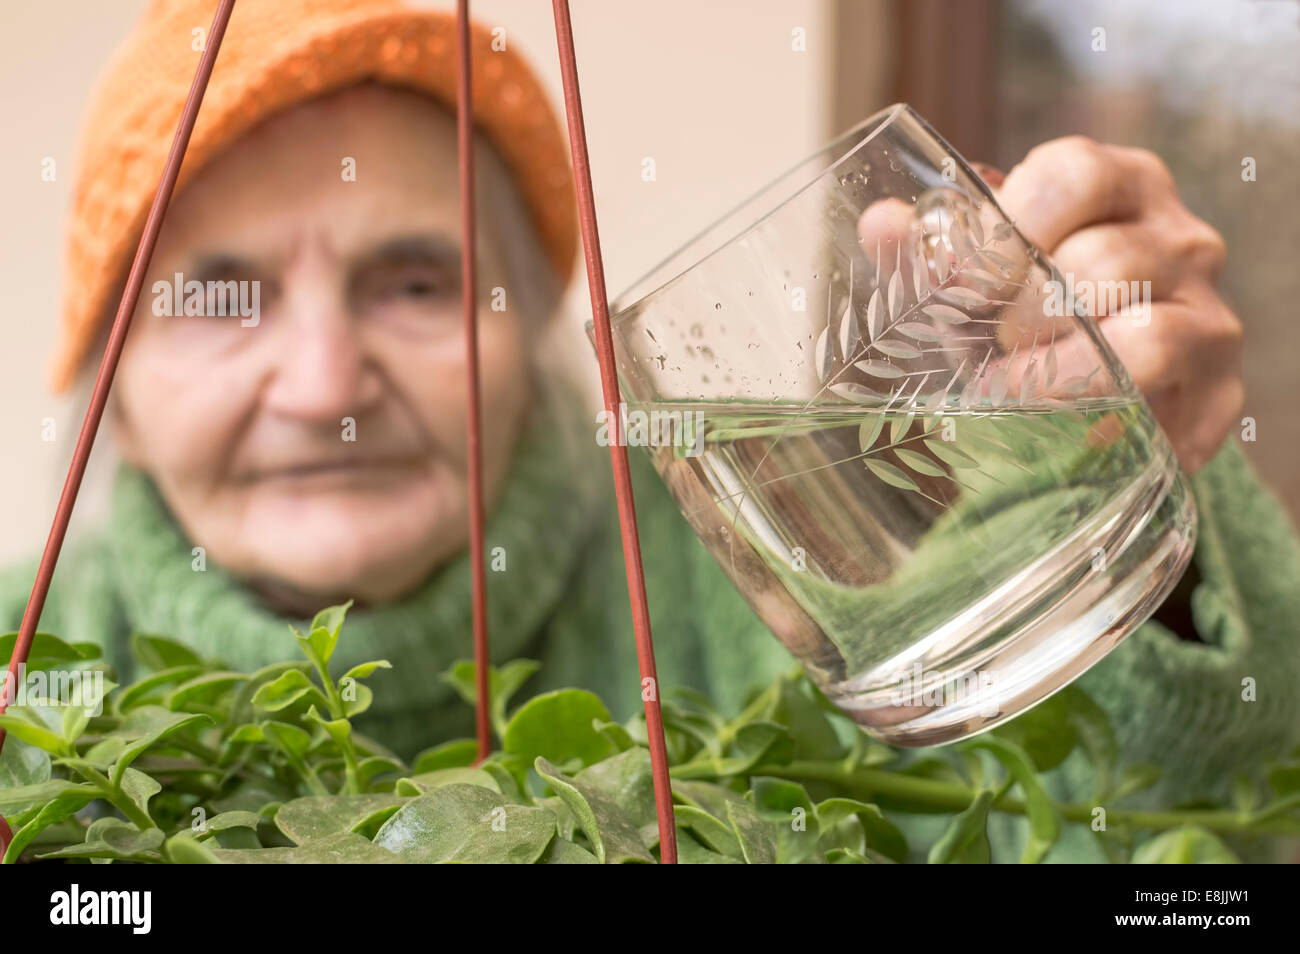 Donna anziana versando acqua su fiori. Immagine con profondità di campo ridotta. Foto Stock